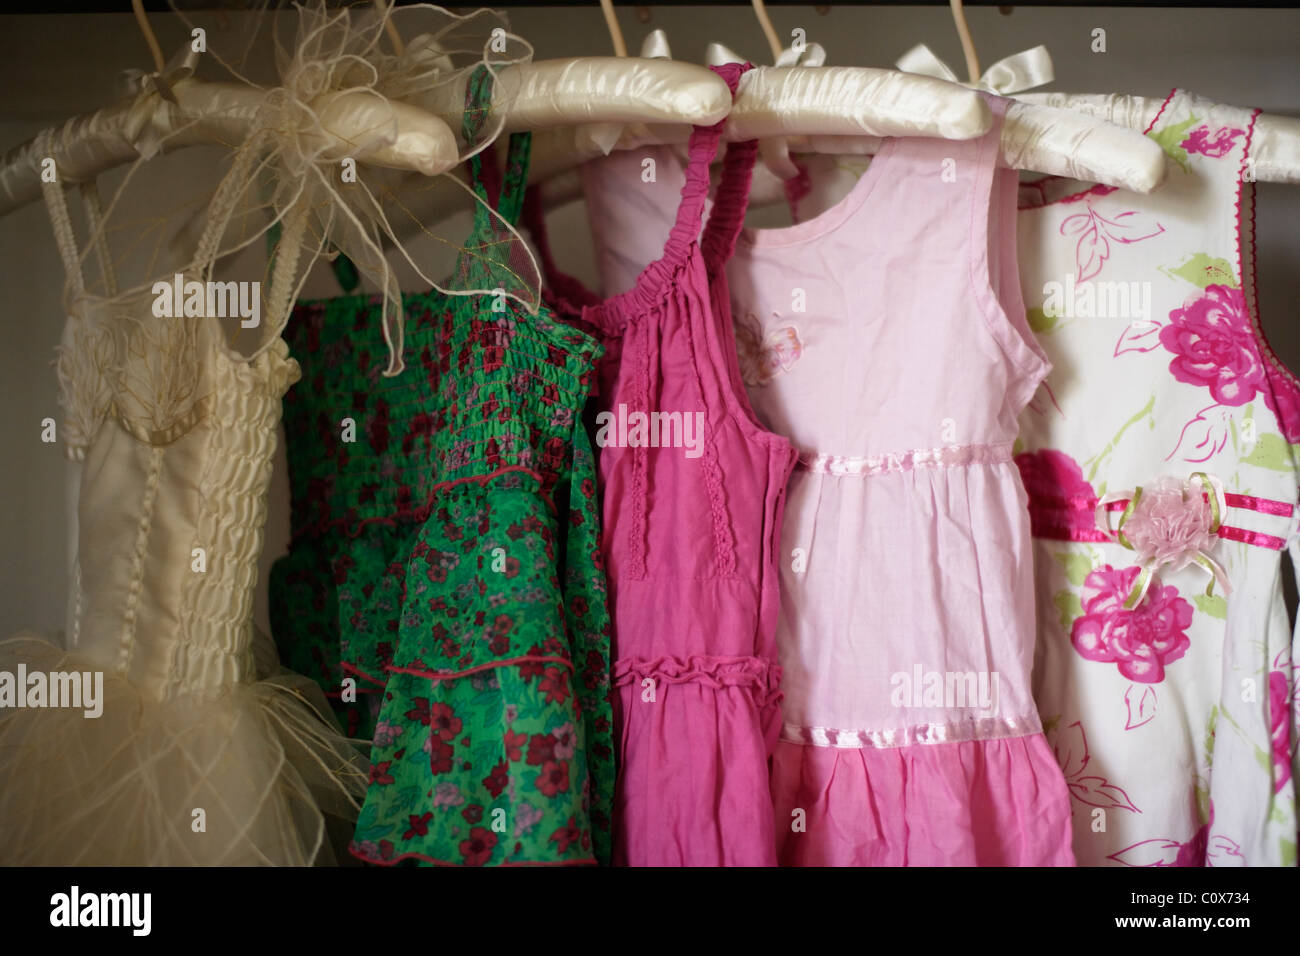 Los vestidos de niña en perchas acolchadas Foto de stock